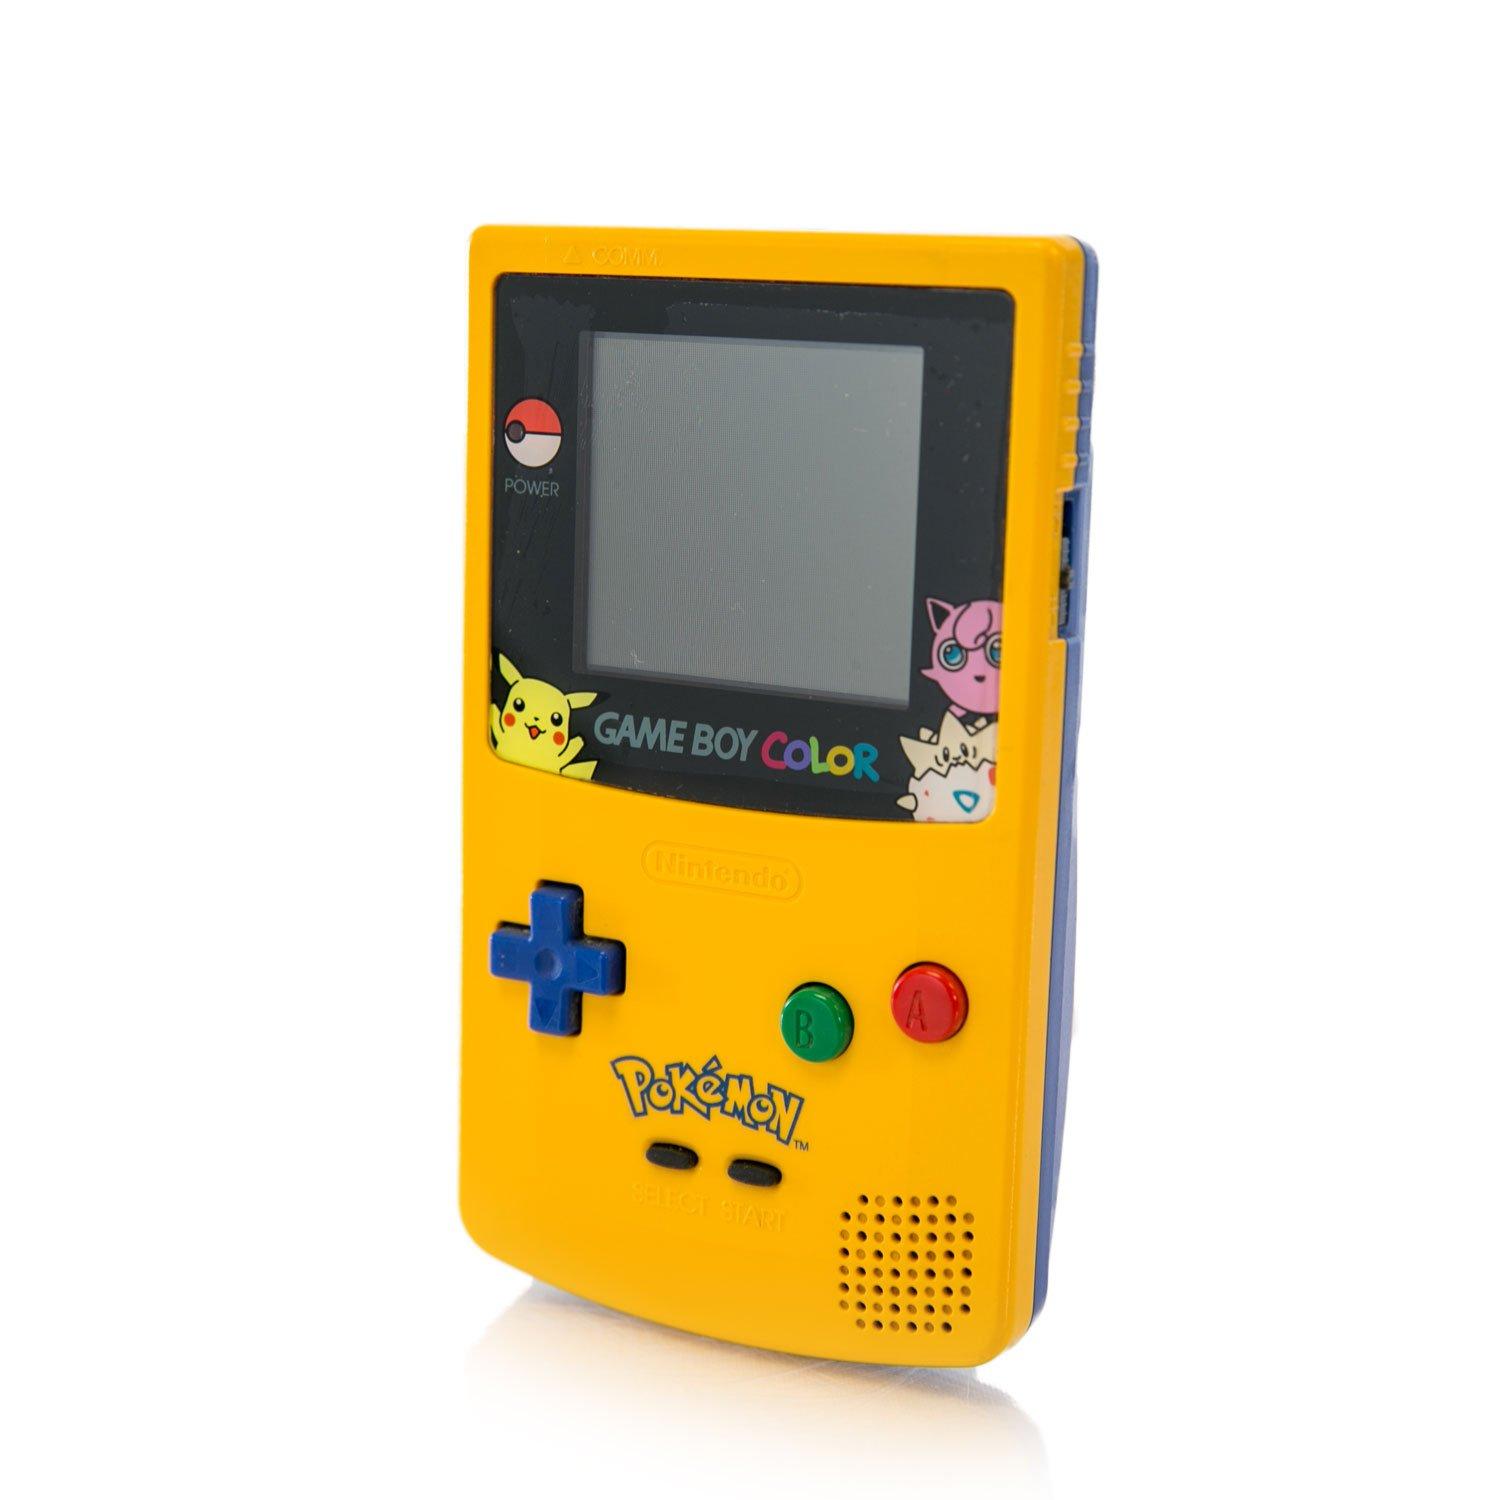 Nintendo портативная. Геймбой Color покемон эдишн. Геймбой желтый. Покемон на геймбой. Nintendo game boy Color Pokemon.